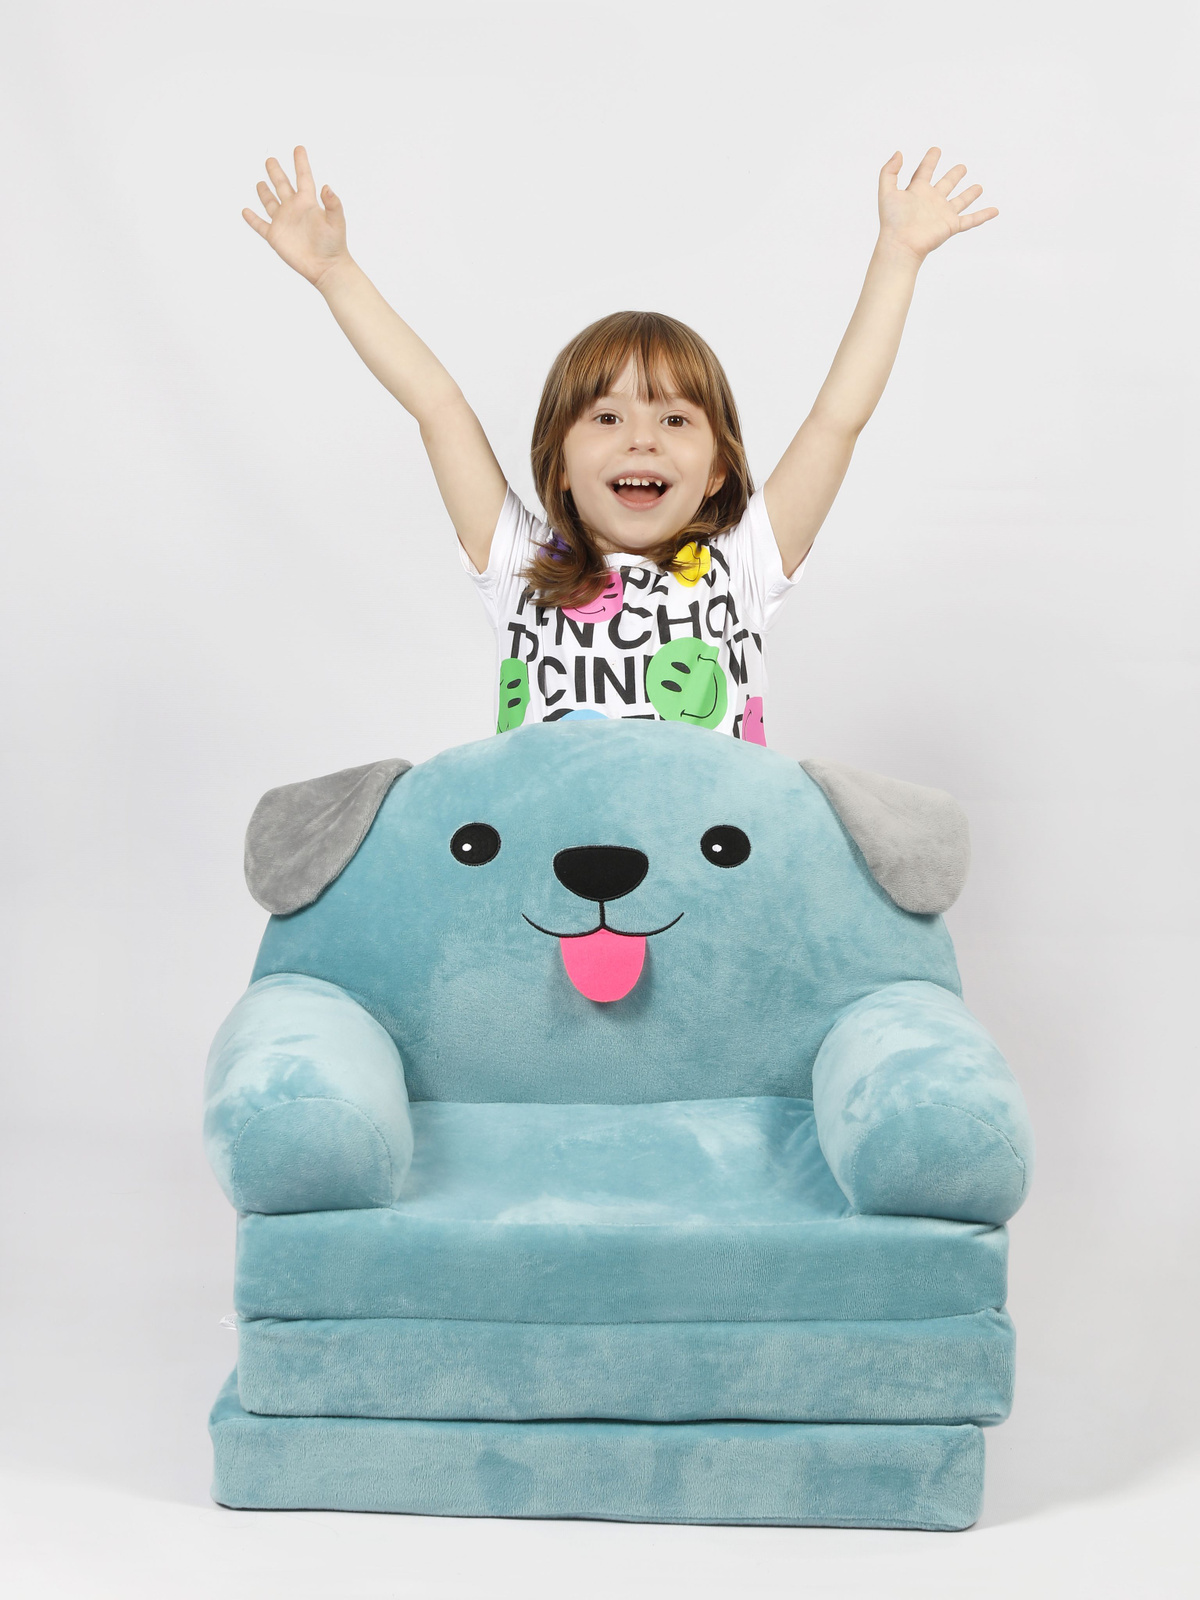 Раскладное кресло для детей не имеет острых углов, изготовлен из гипоаллергенных материалов.